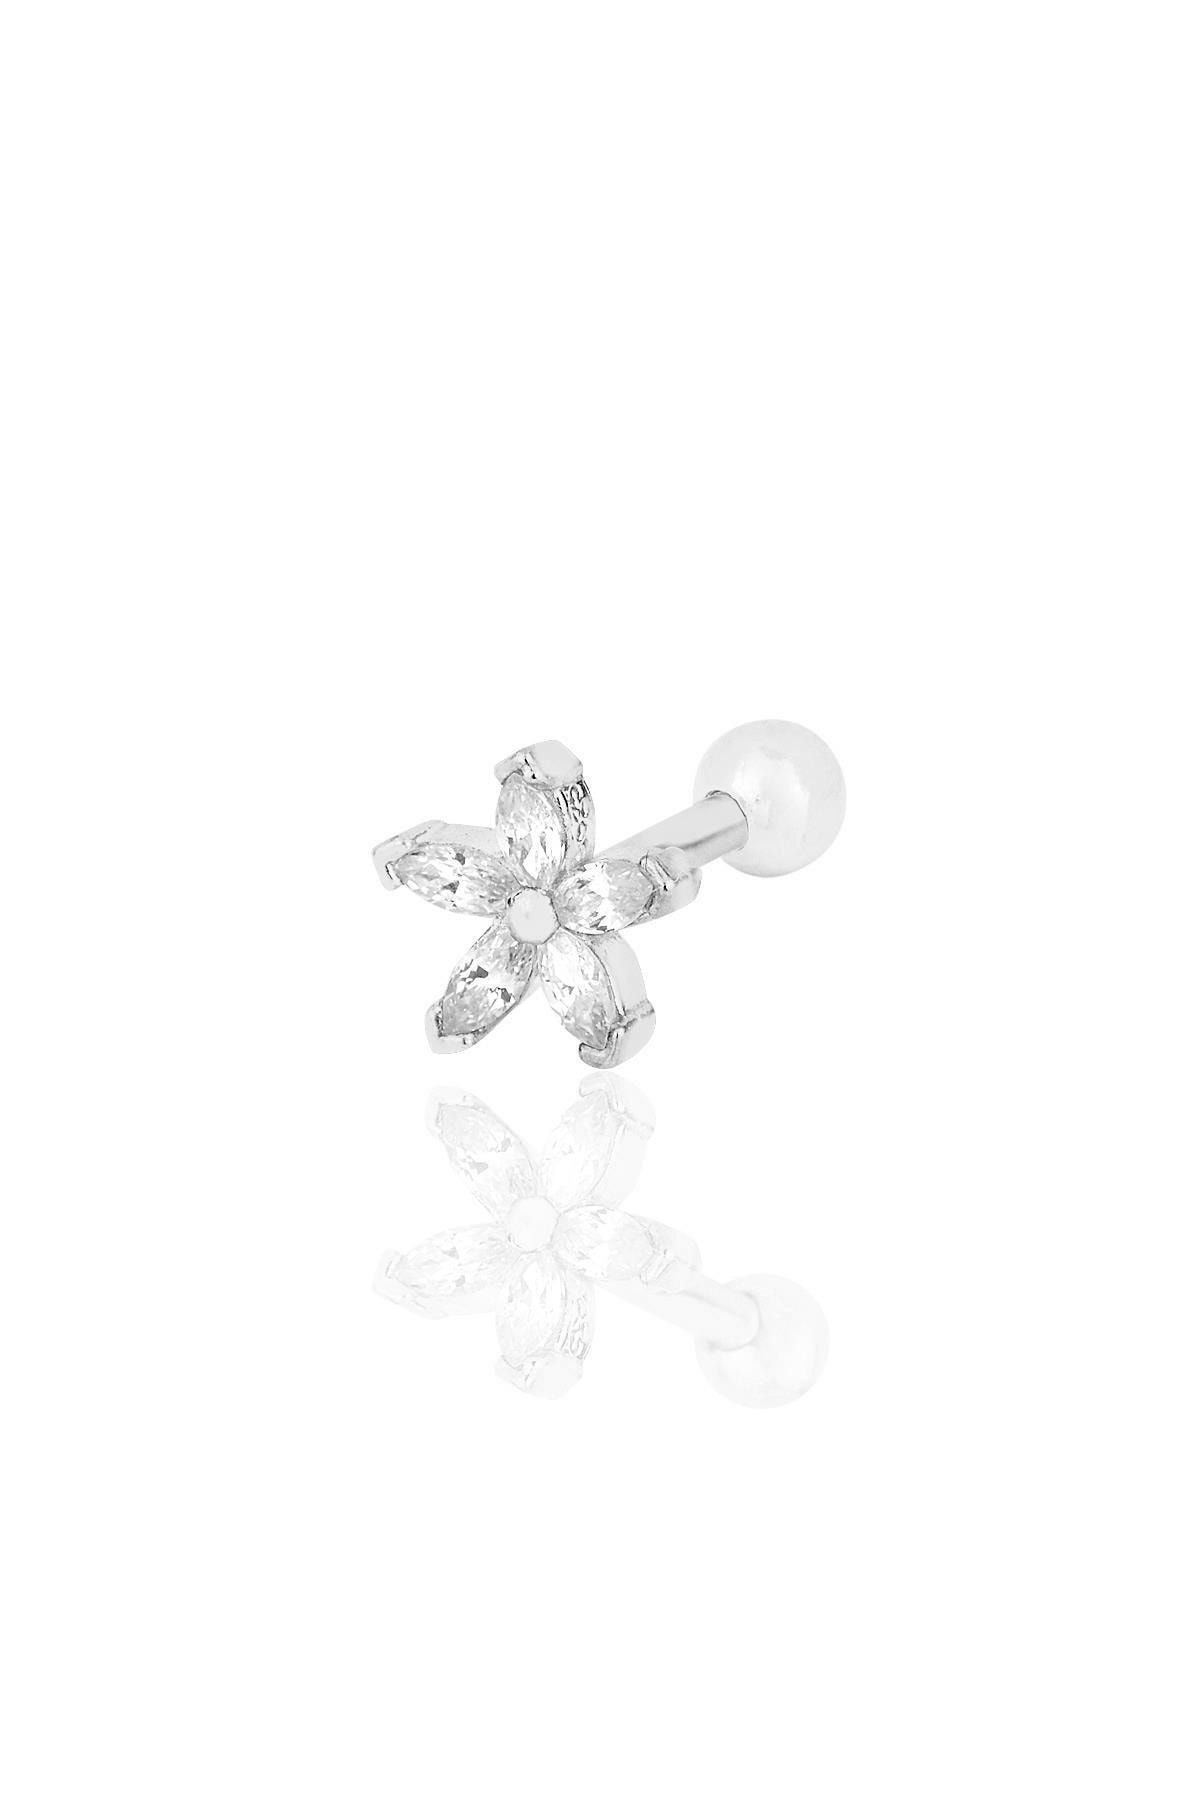 Söğütlü Silver Gümüş Rodyumlu Zirkon Taşlı Çiçek Modeli Tragus Helix Piercing Küpe